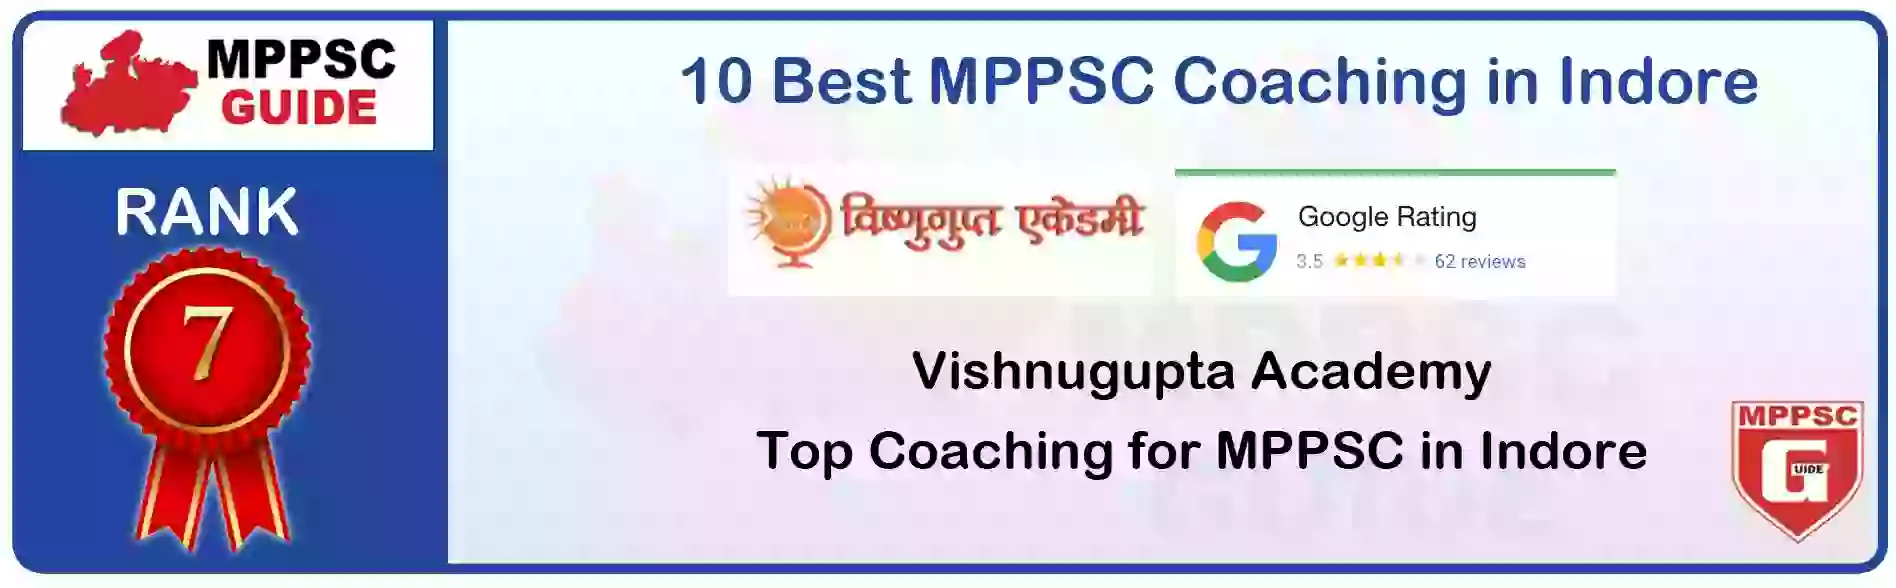 MPPSC Coaching in Sagar, MPPSC Coaching Institute In Sagar, Best MPPSC Coaching in Sagar, Top 10 MPPSC Coaching In Sagar, best mppsc coaching institute in sagar, MPPSC Coaching Classes In Sagar, MPPSC Online Coaching In Sagar, mppsc coaching in Sagar bhanwarkua